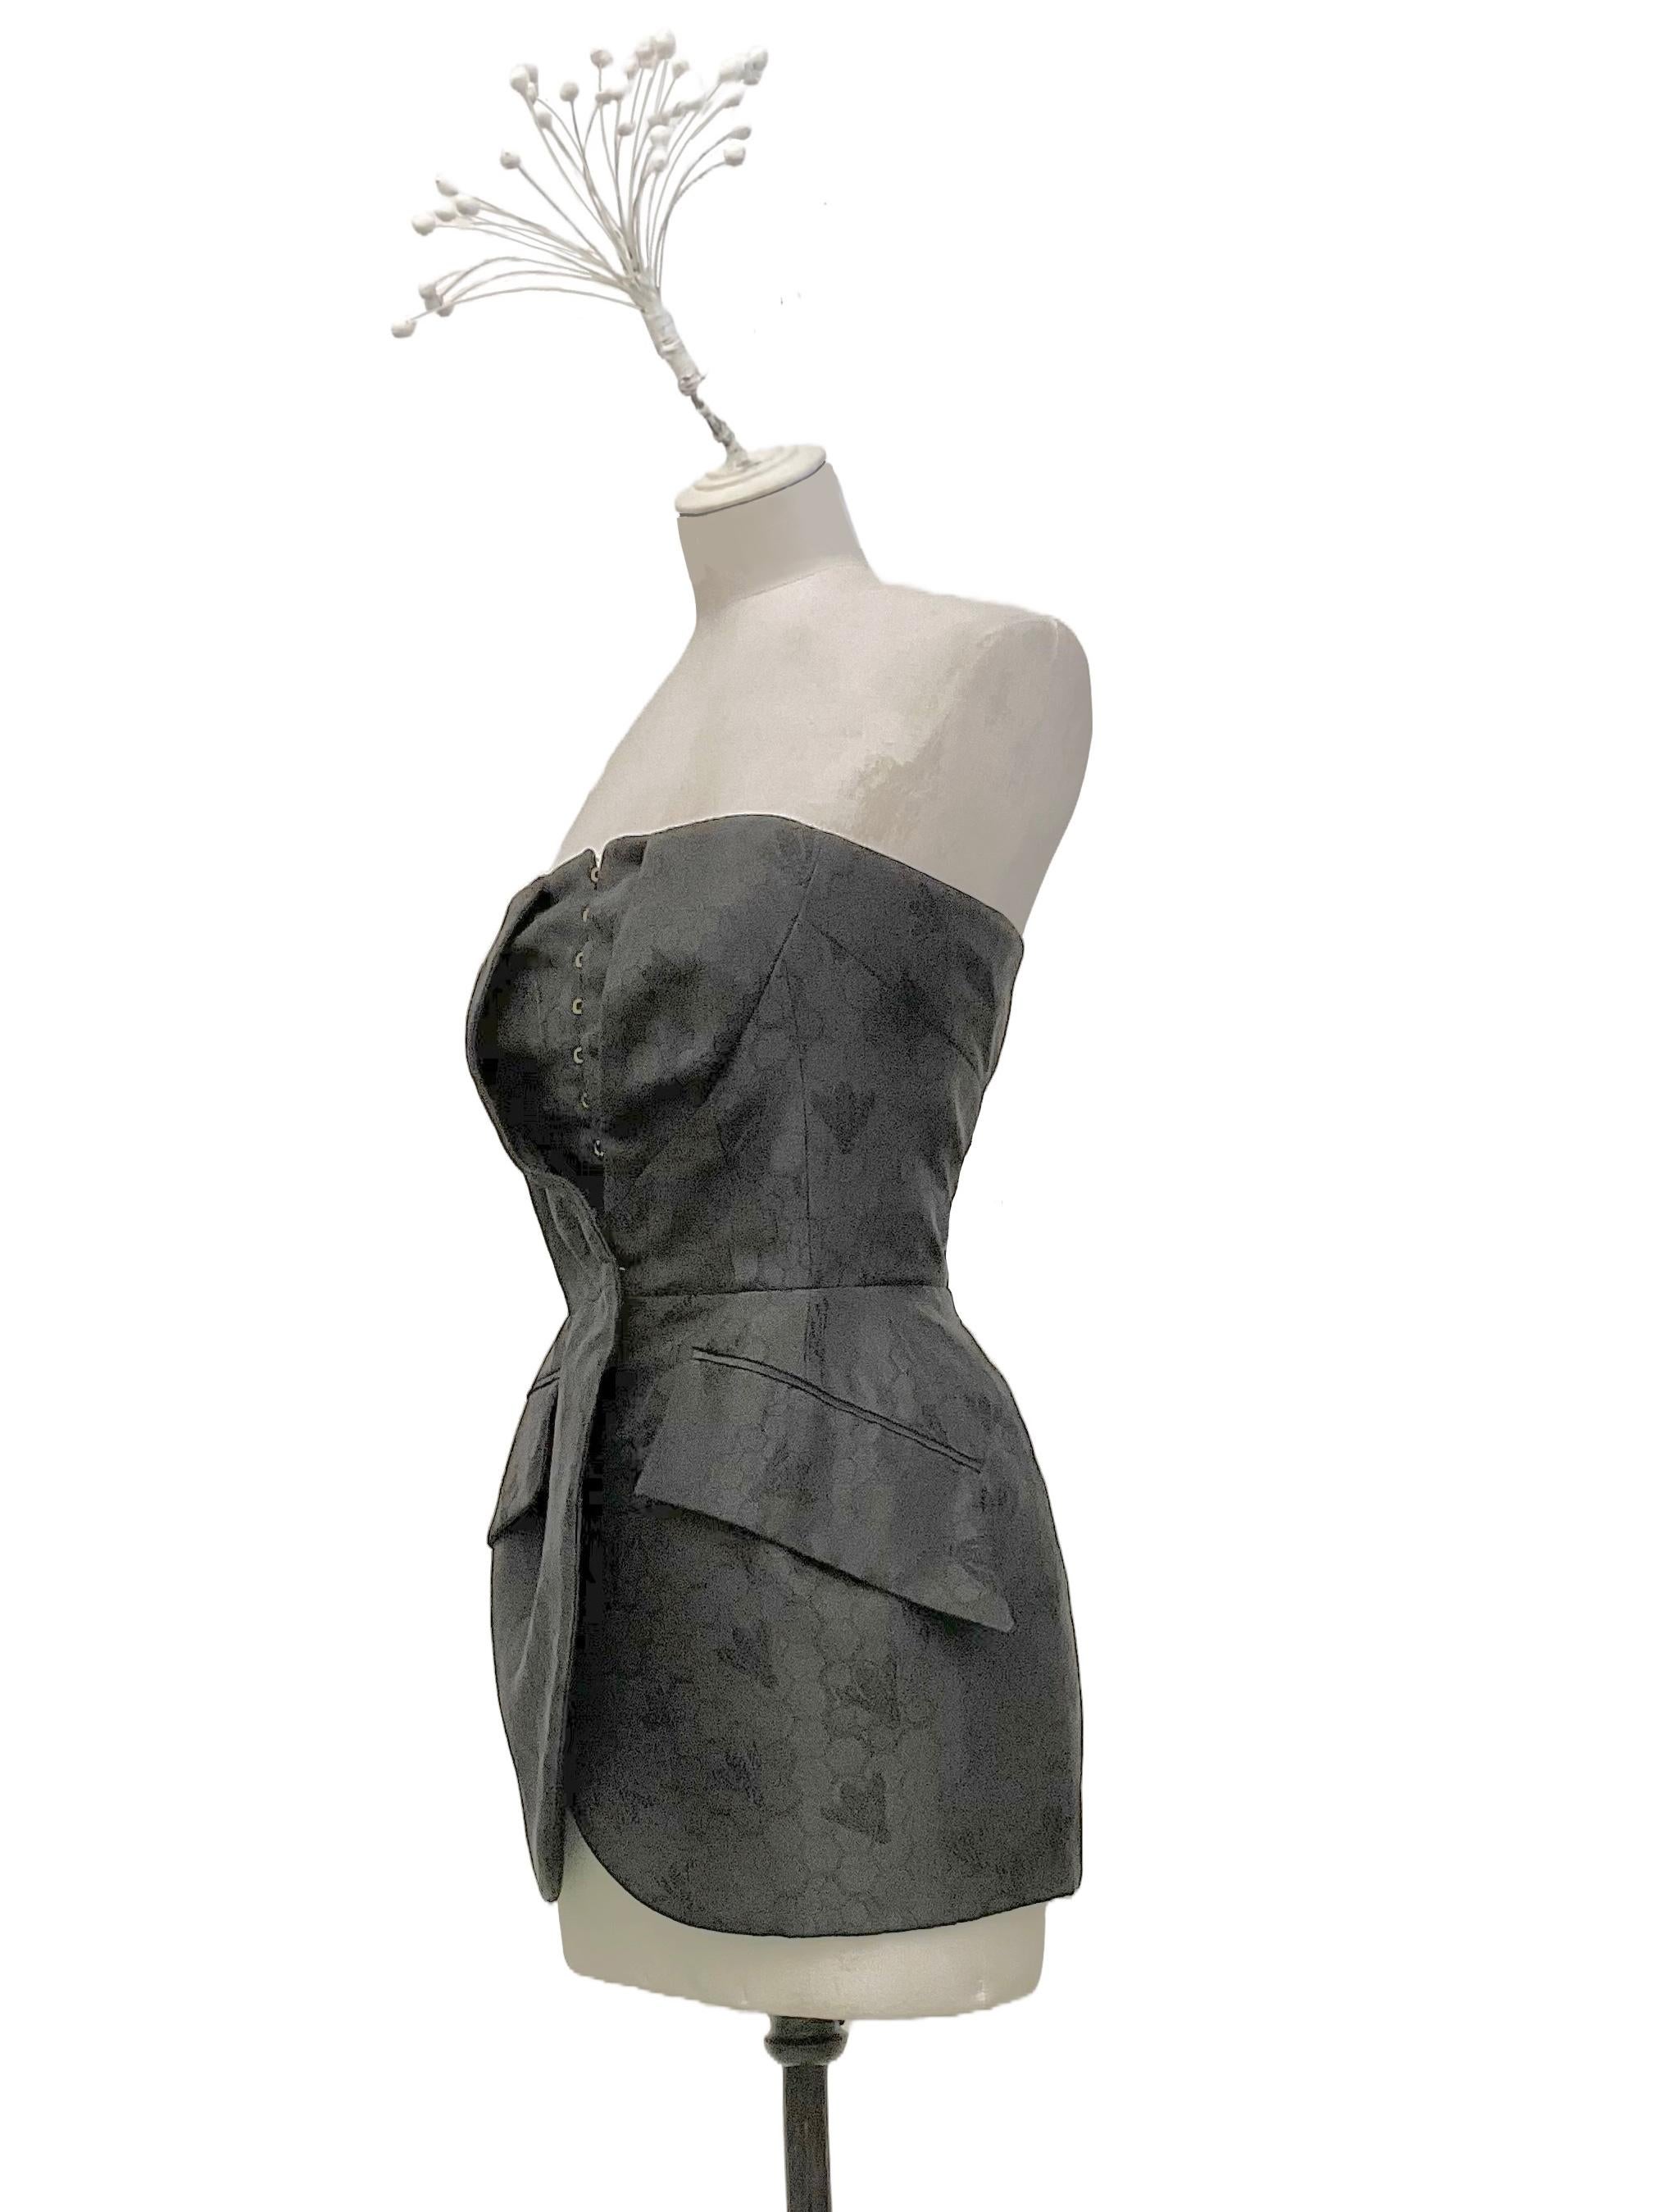 Giacca-Bustier monopetto nera di Alexander McQueen by Sarah
Burton della collezione Ready to Wear Primavera Estate 2013.
La giacca-bustier è monopetto e si chiude con un gancio metallico
posizionato sul punto vita.
Le tasche sono oblique con patta e